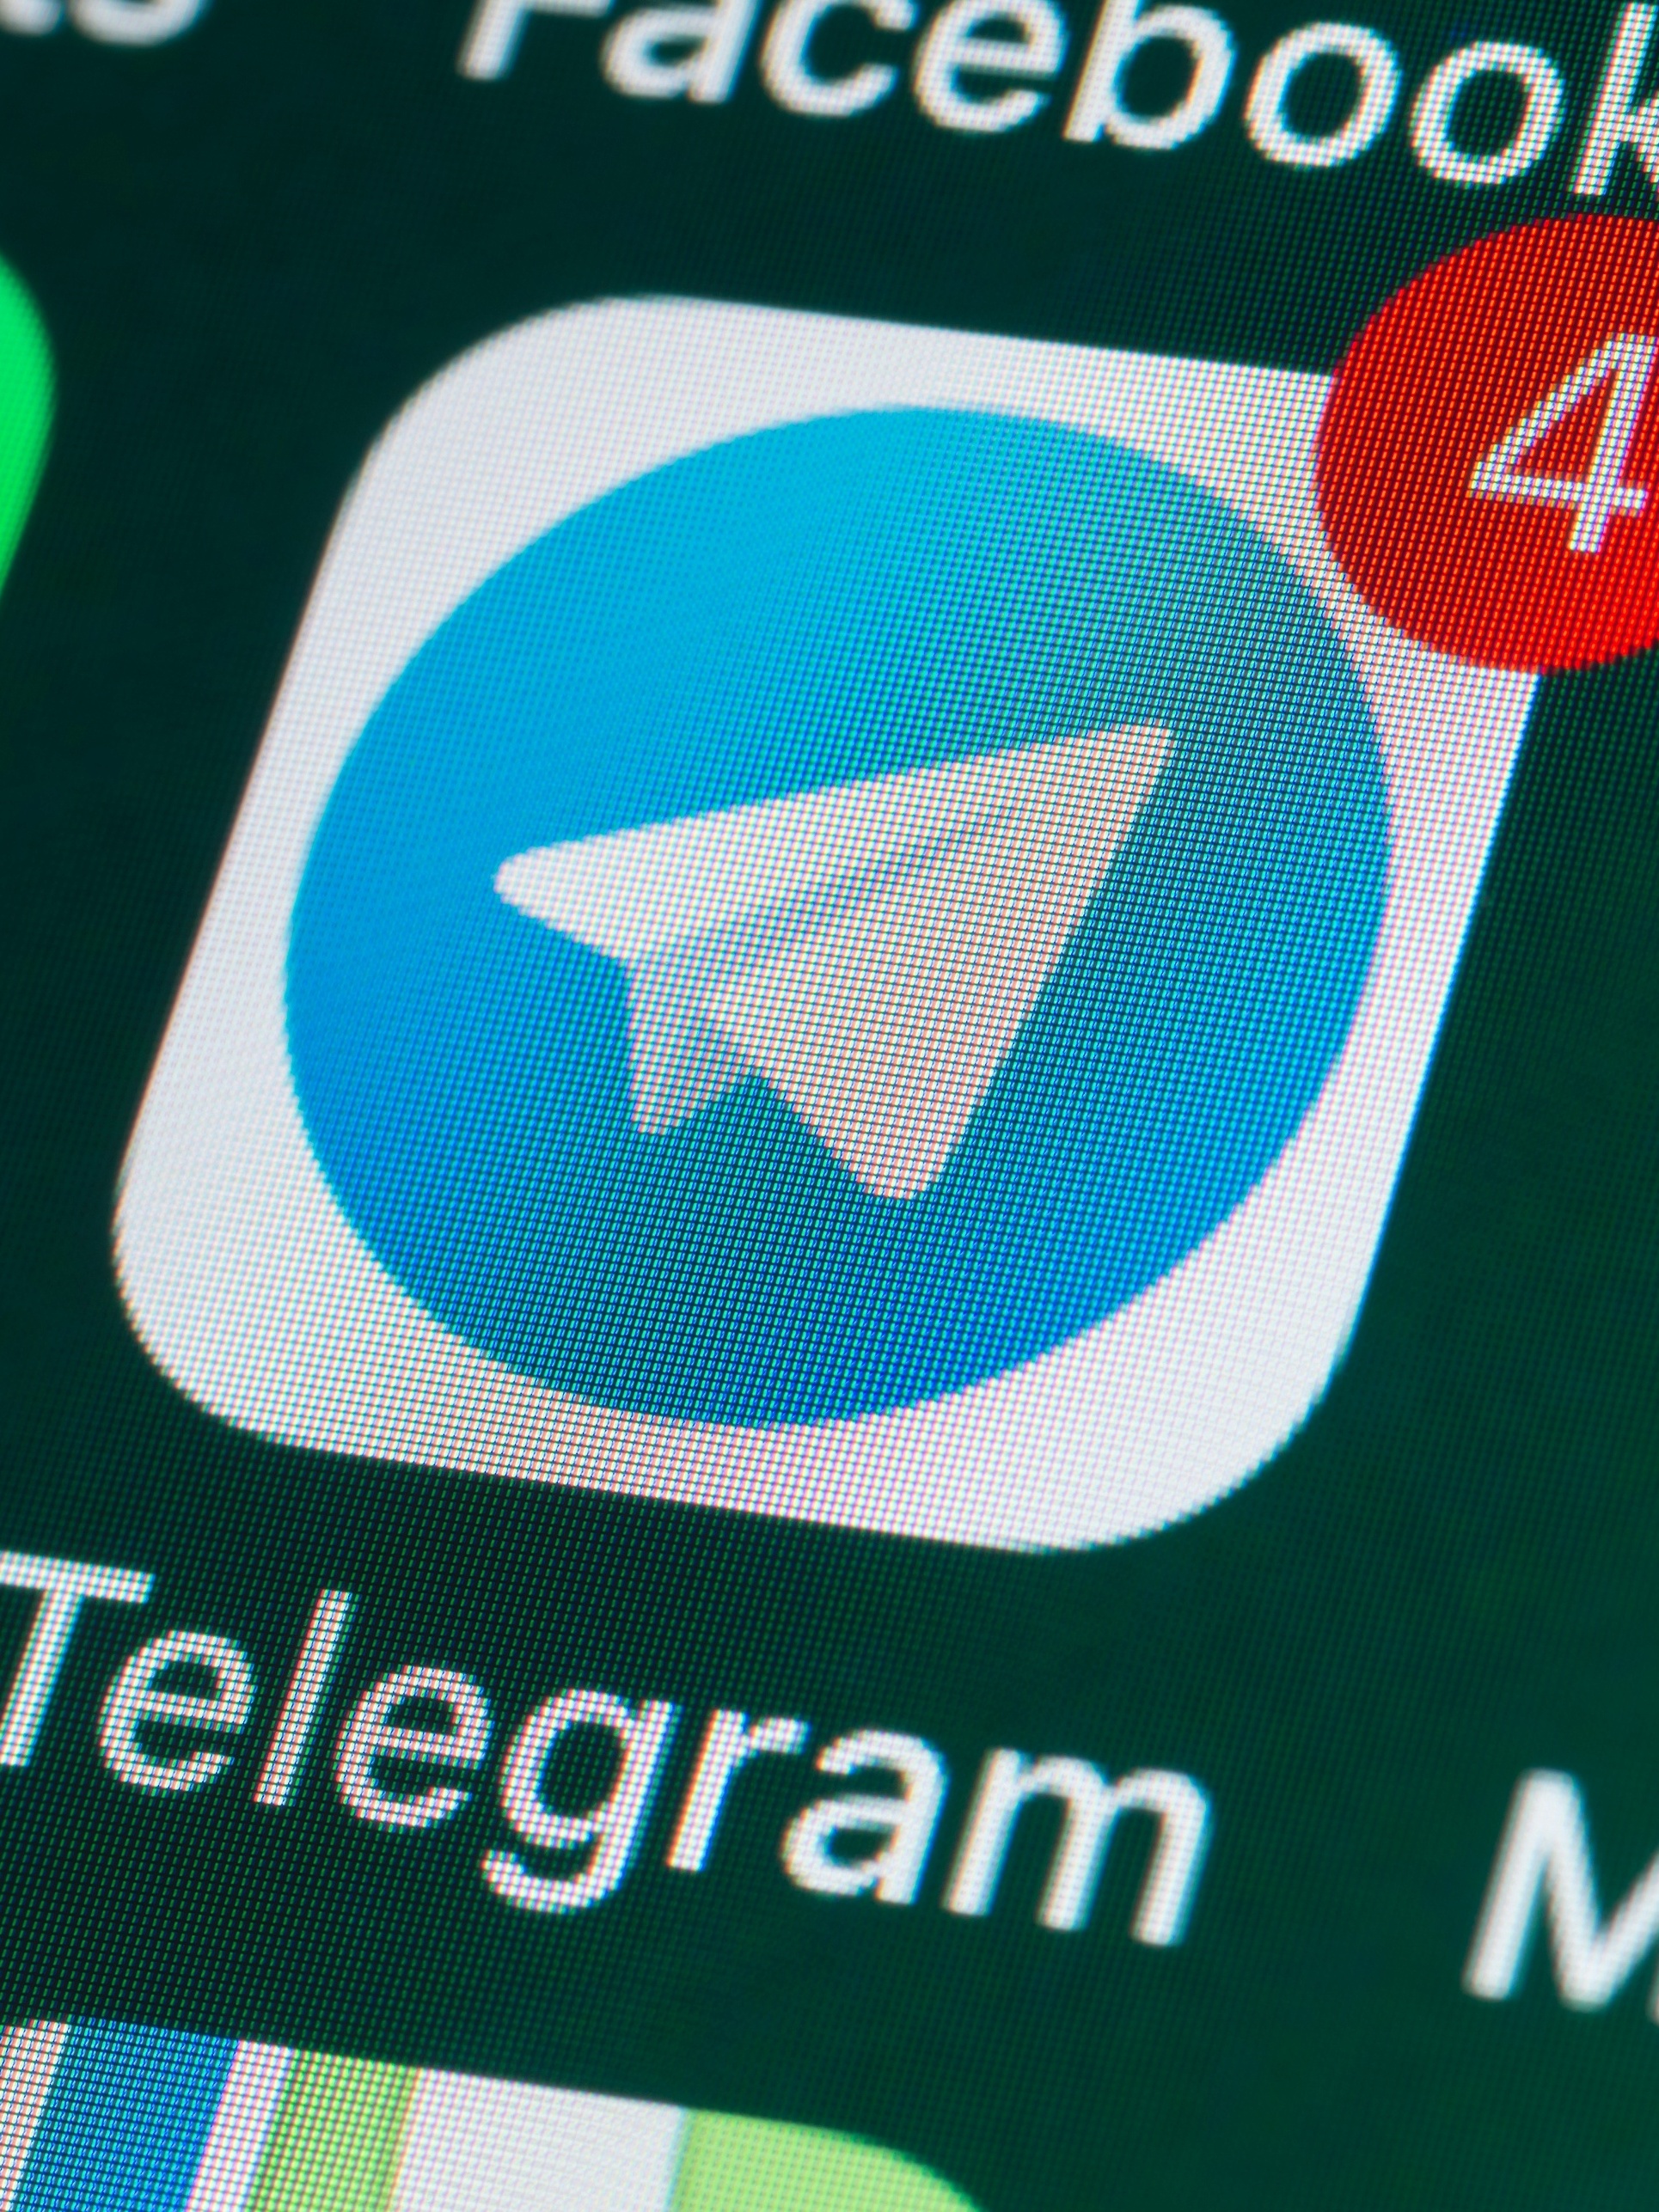 Telegram pode ser hackeado? É mais seguro que o WhatsApp? Entenda -  11/06/2019 - UOL TILT